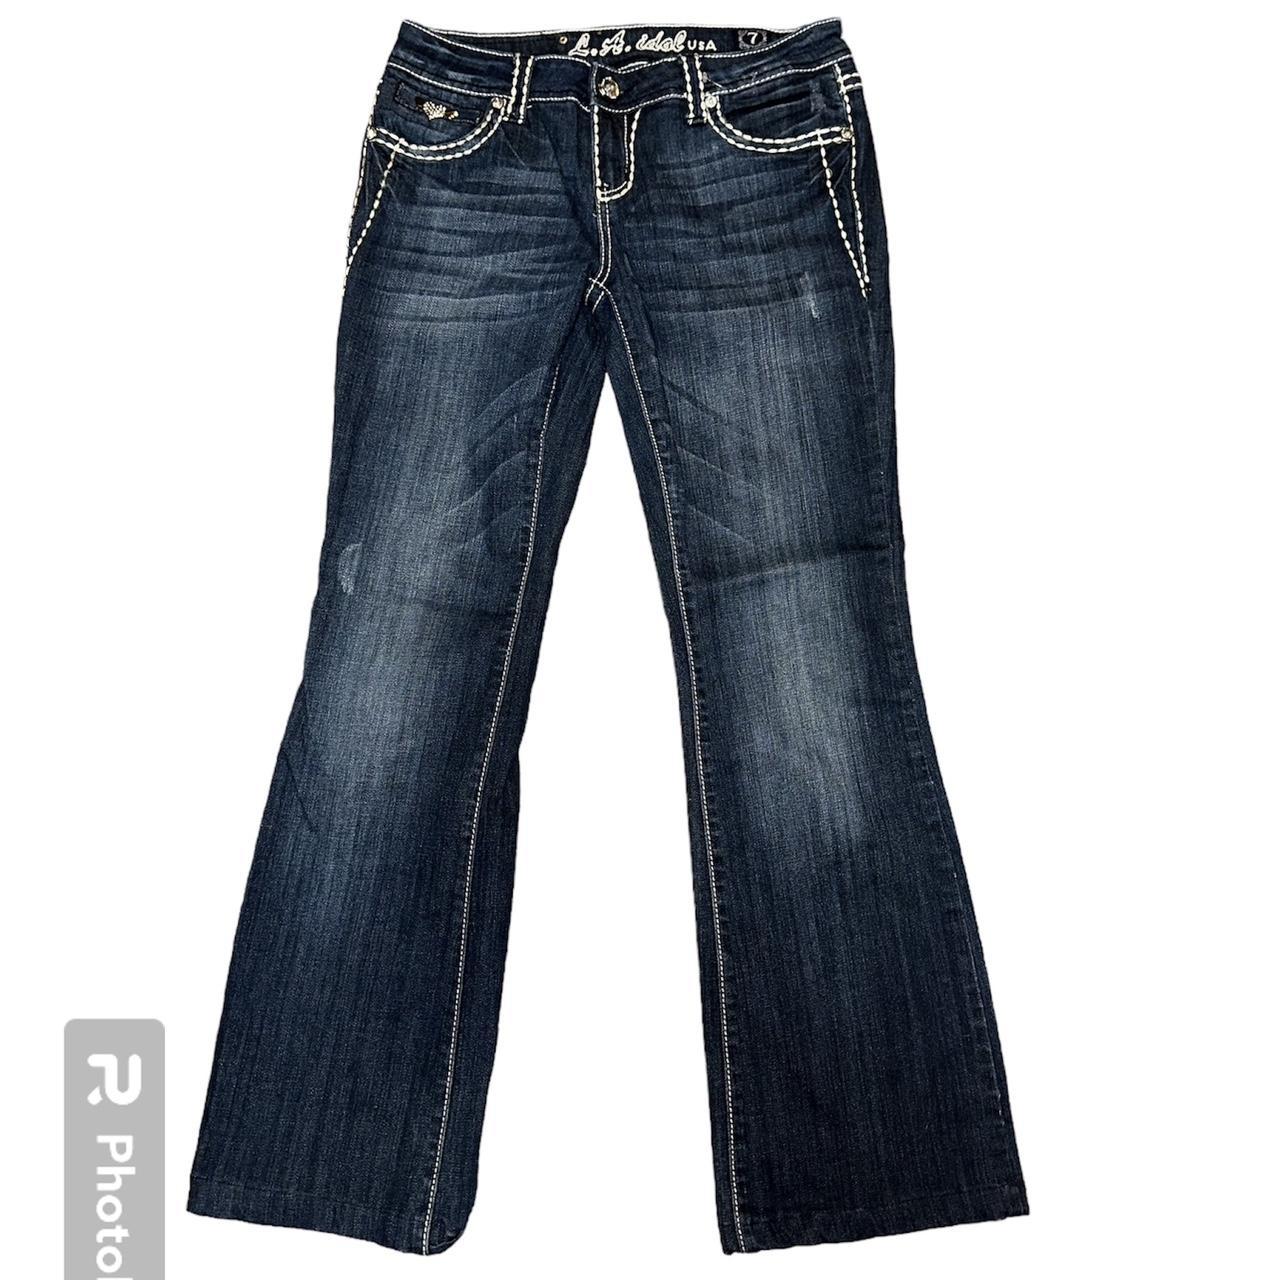 LA Idol low rise bedazzled Y2K jeans - size 7 -... - Depop